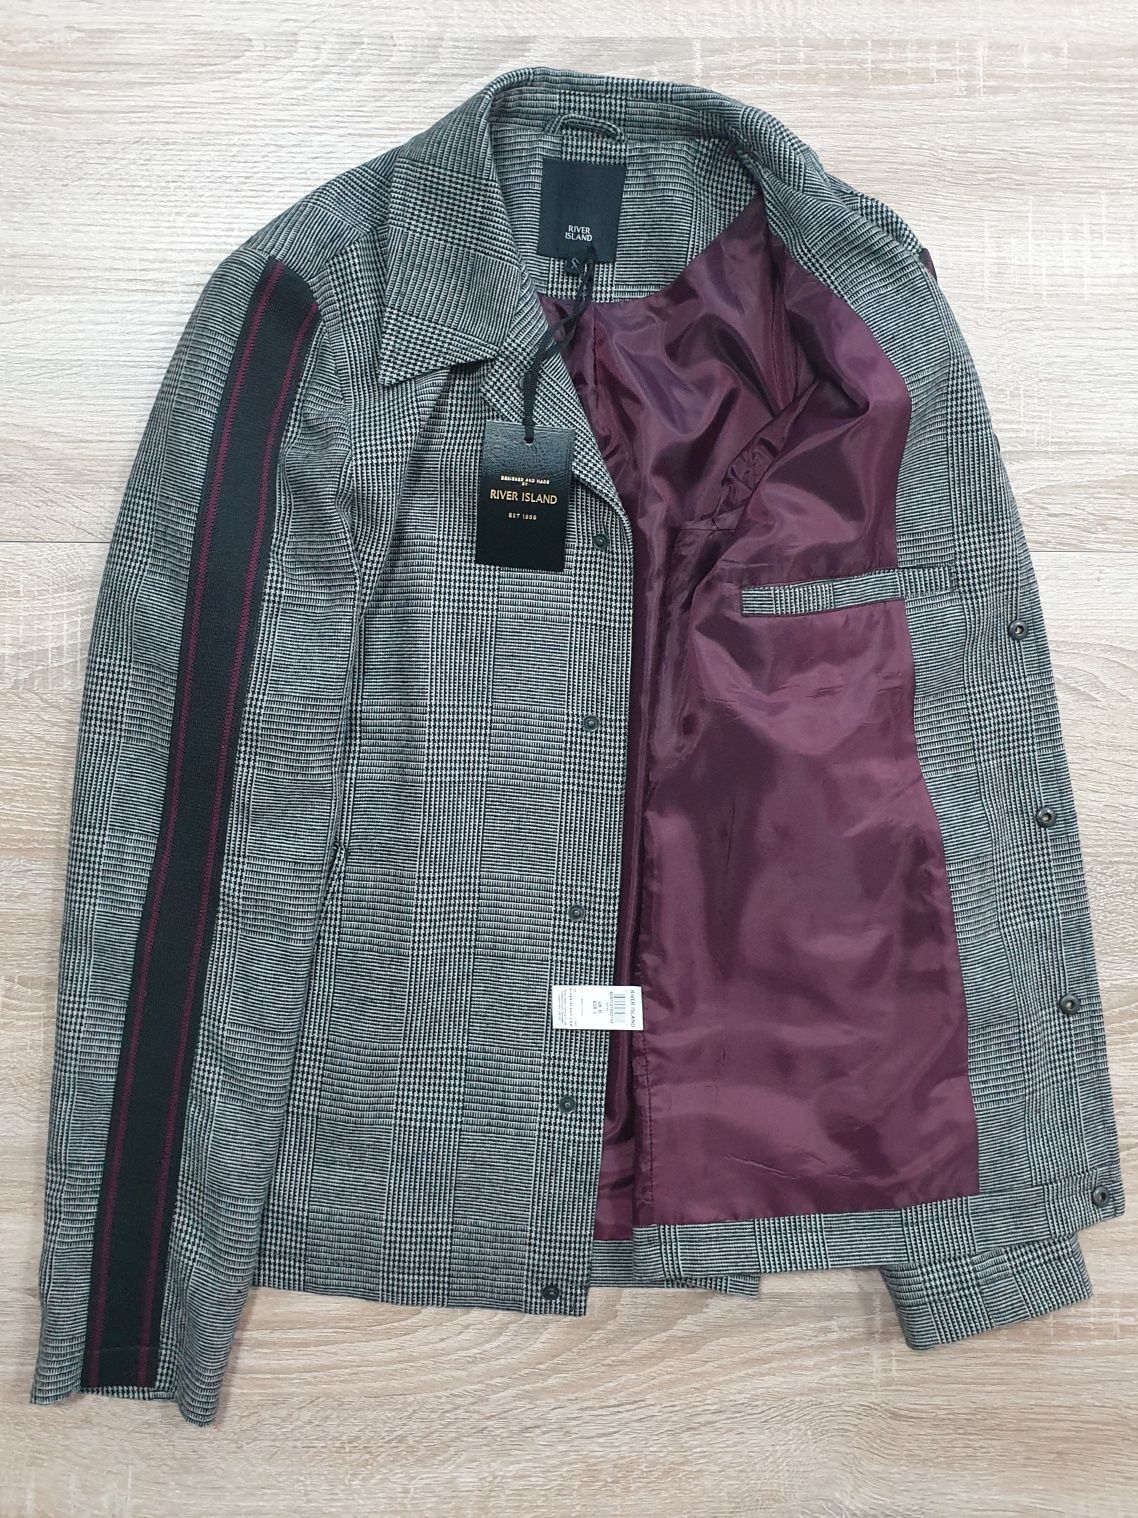 River Island - M та S -  2 види - Куртка жакет чоловічий пиджак мужско